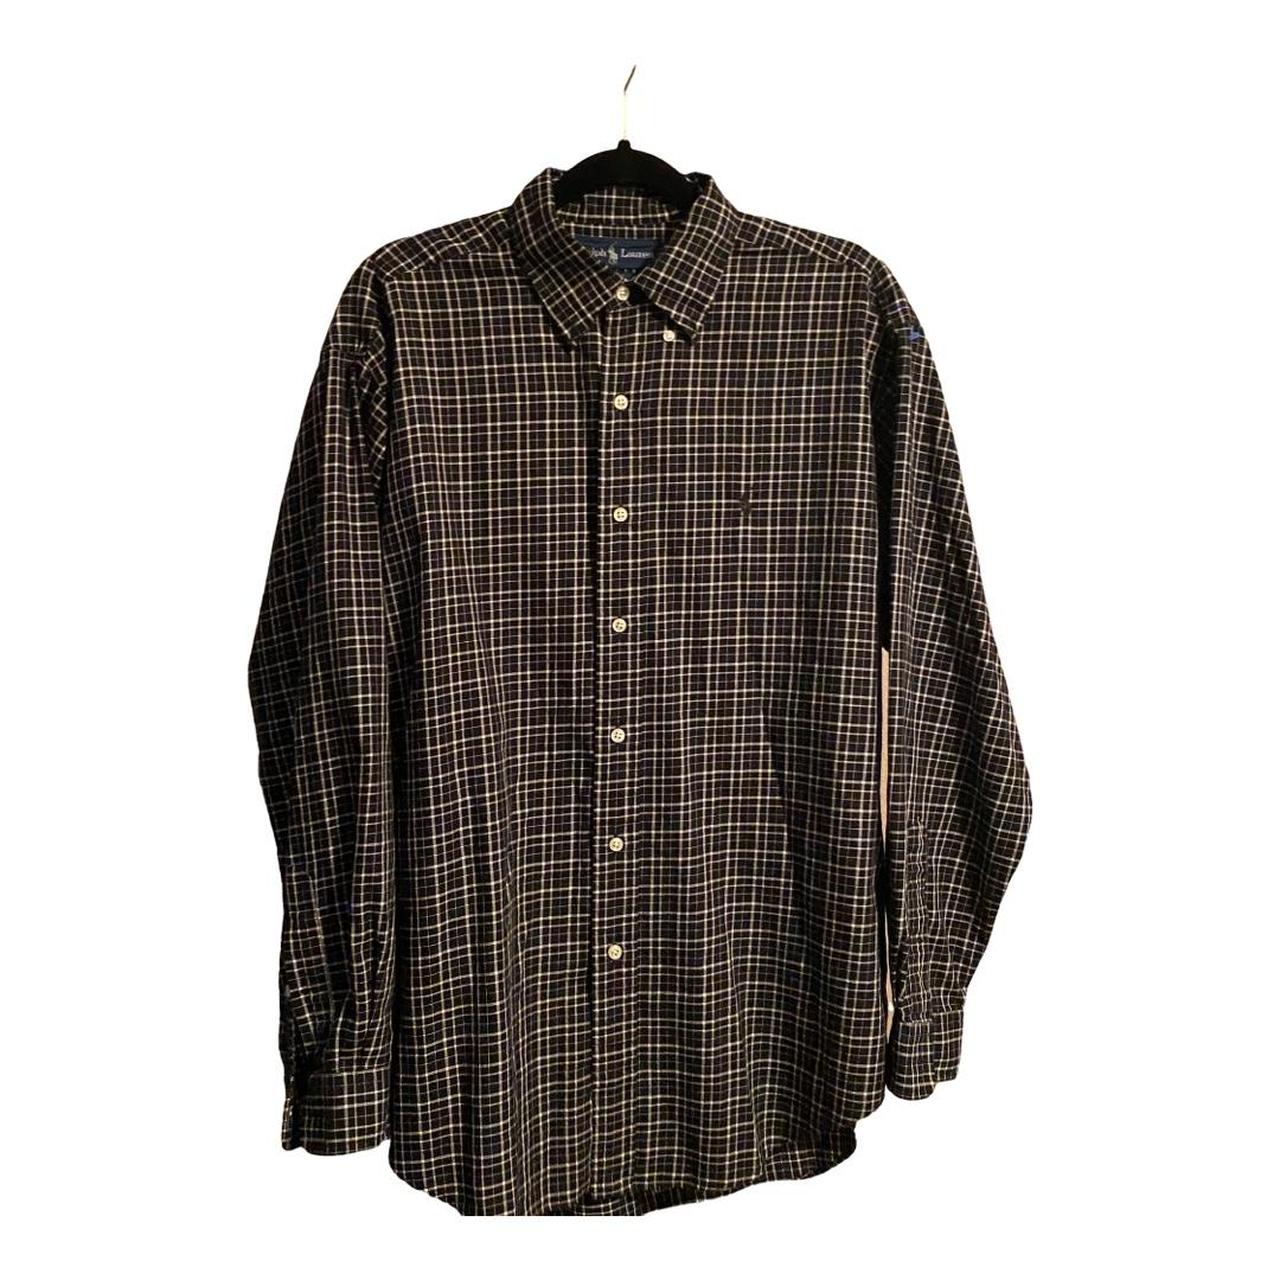 Ralph Lauren Button Up Shirt - size m - blake cut -... - Depop